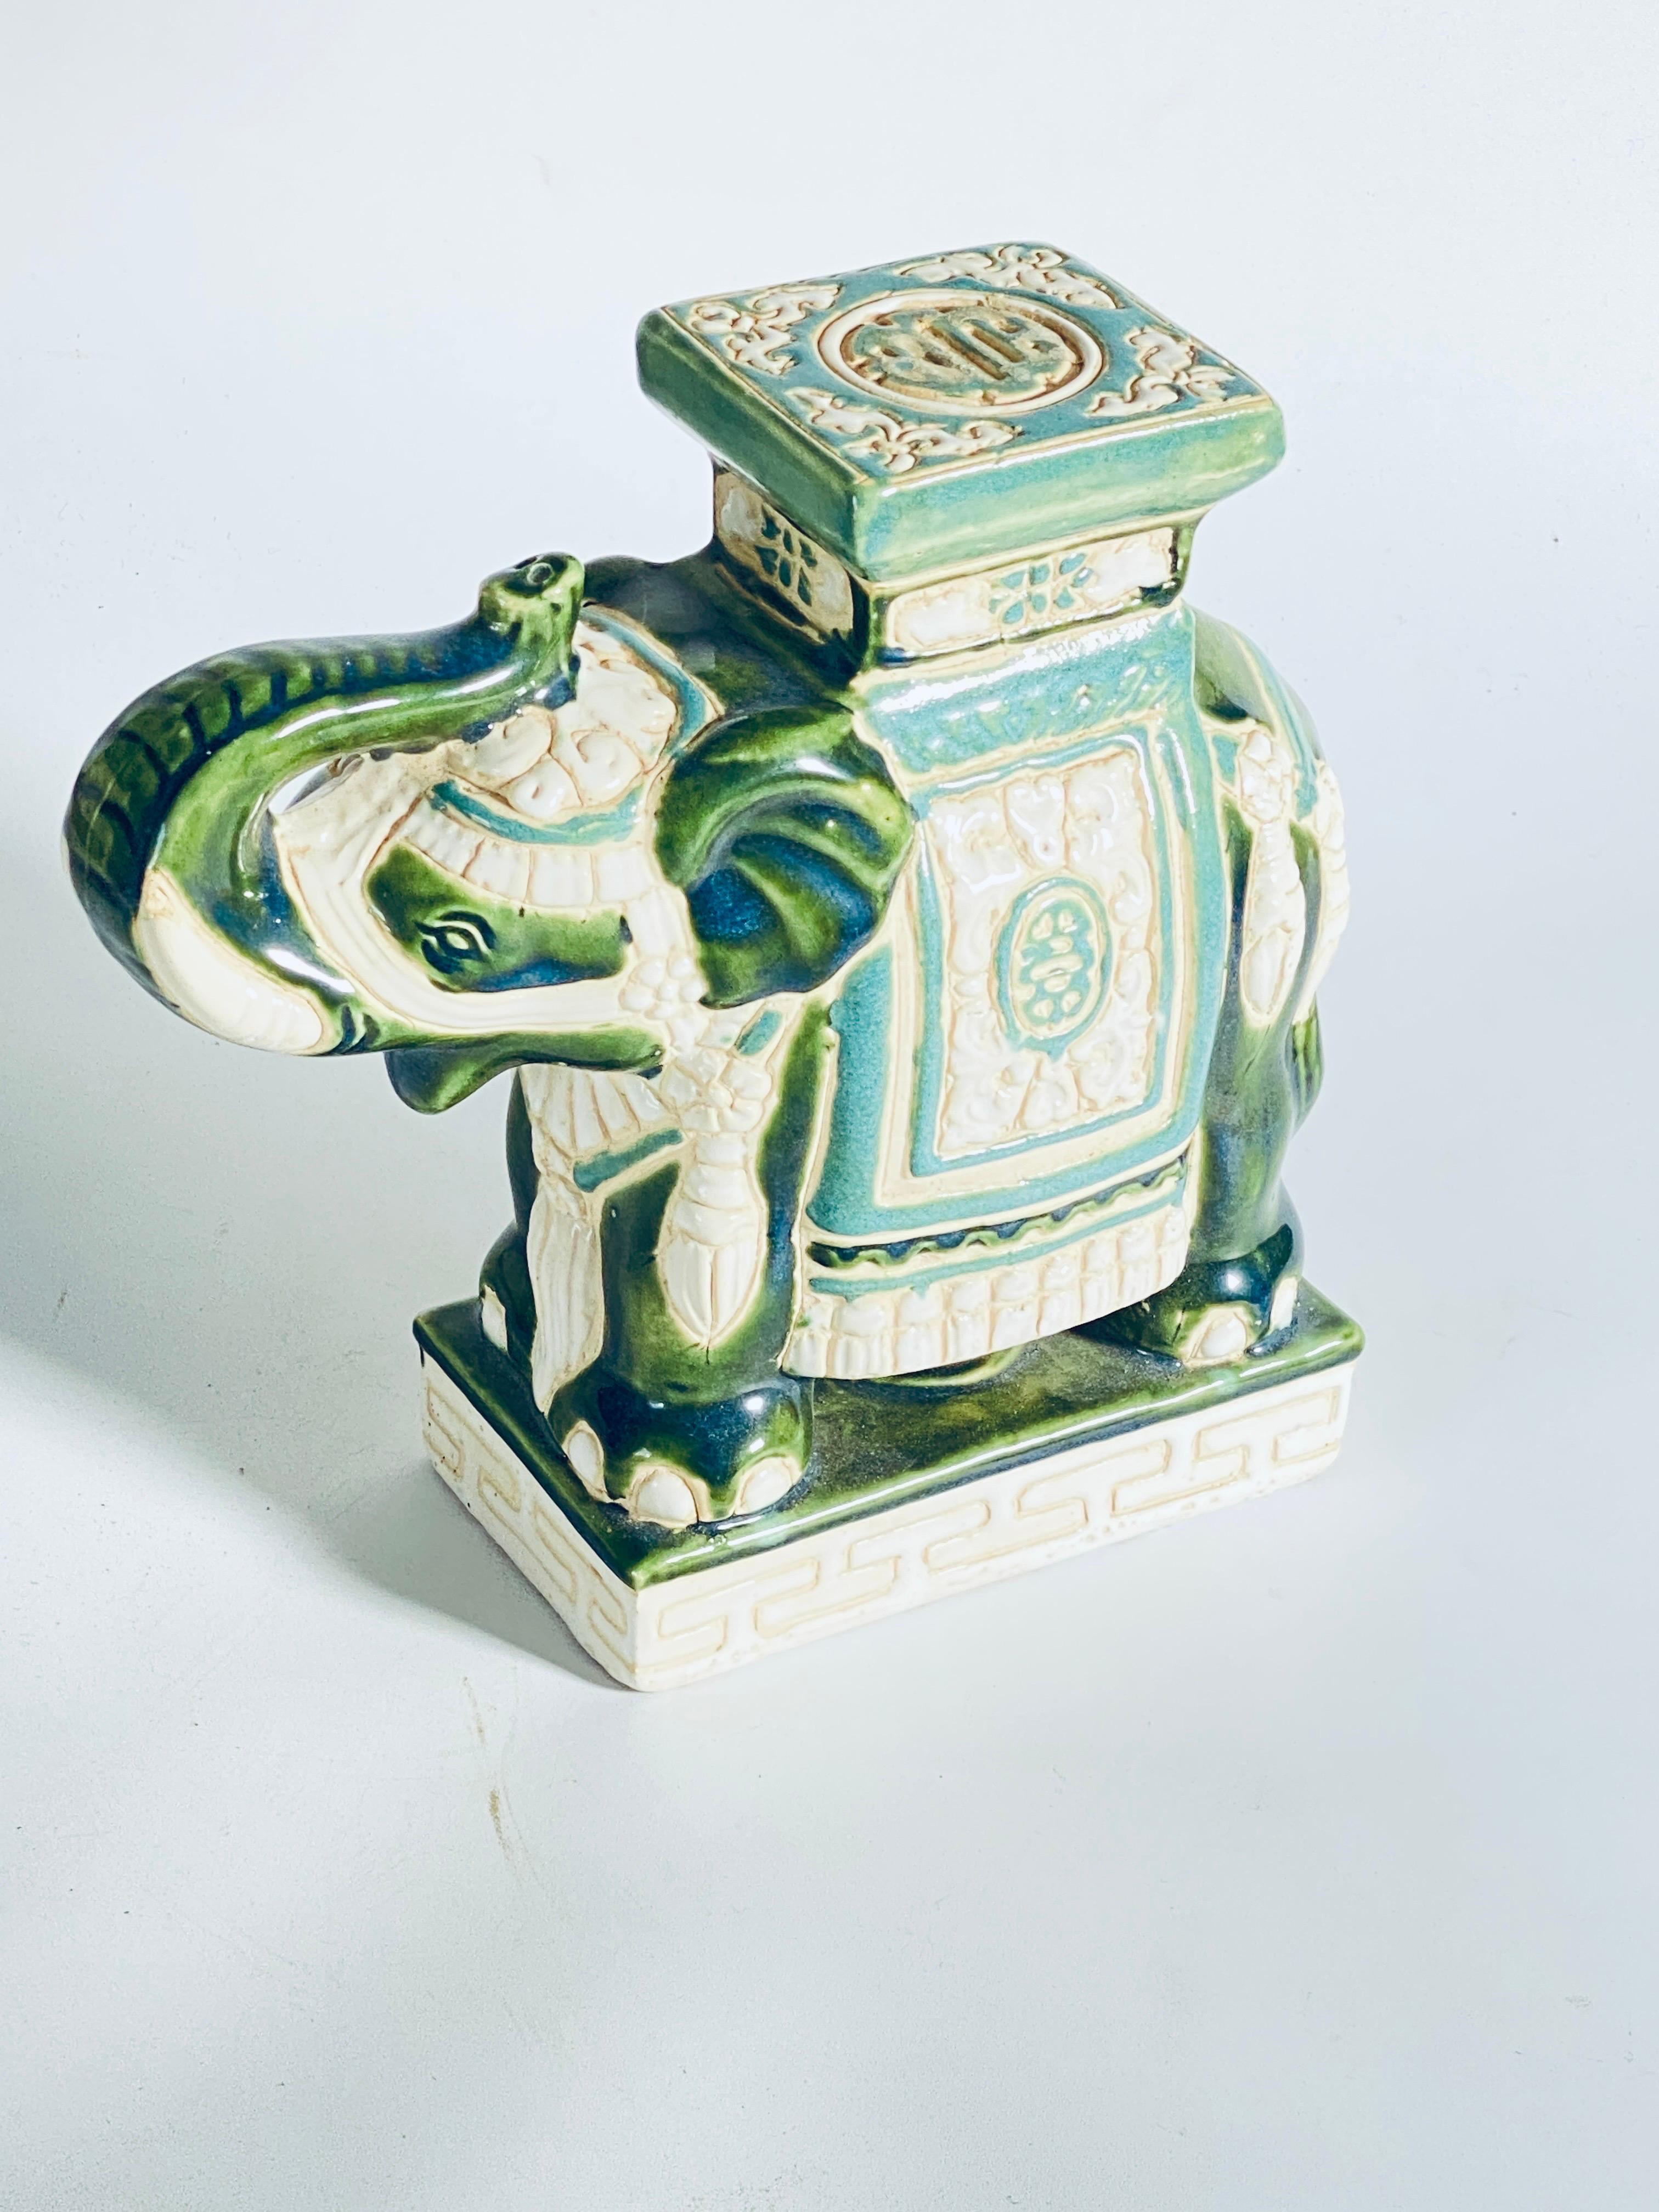 Éléphant en céramique émaillée du milieu du 20e siècle  Porte-plantes de fleurs.
Fabriqué à la main en céramique. Une belle addition à votre maison, à l'intérieur ou à l'extérieur. Il est en bon état, de couleur verte.